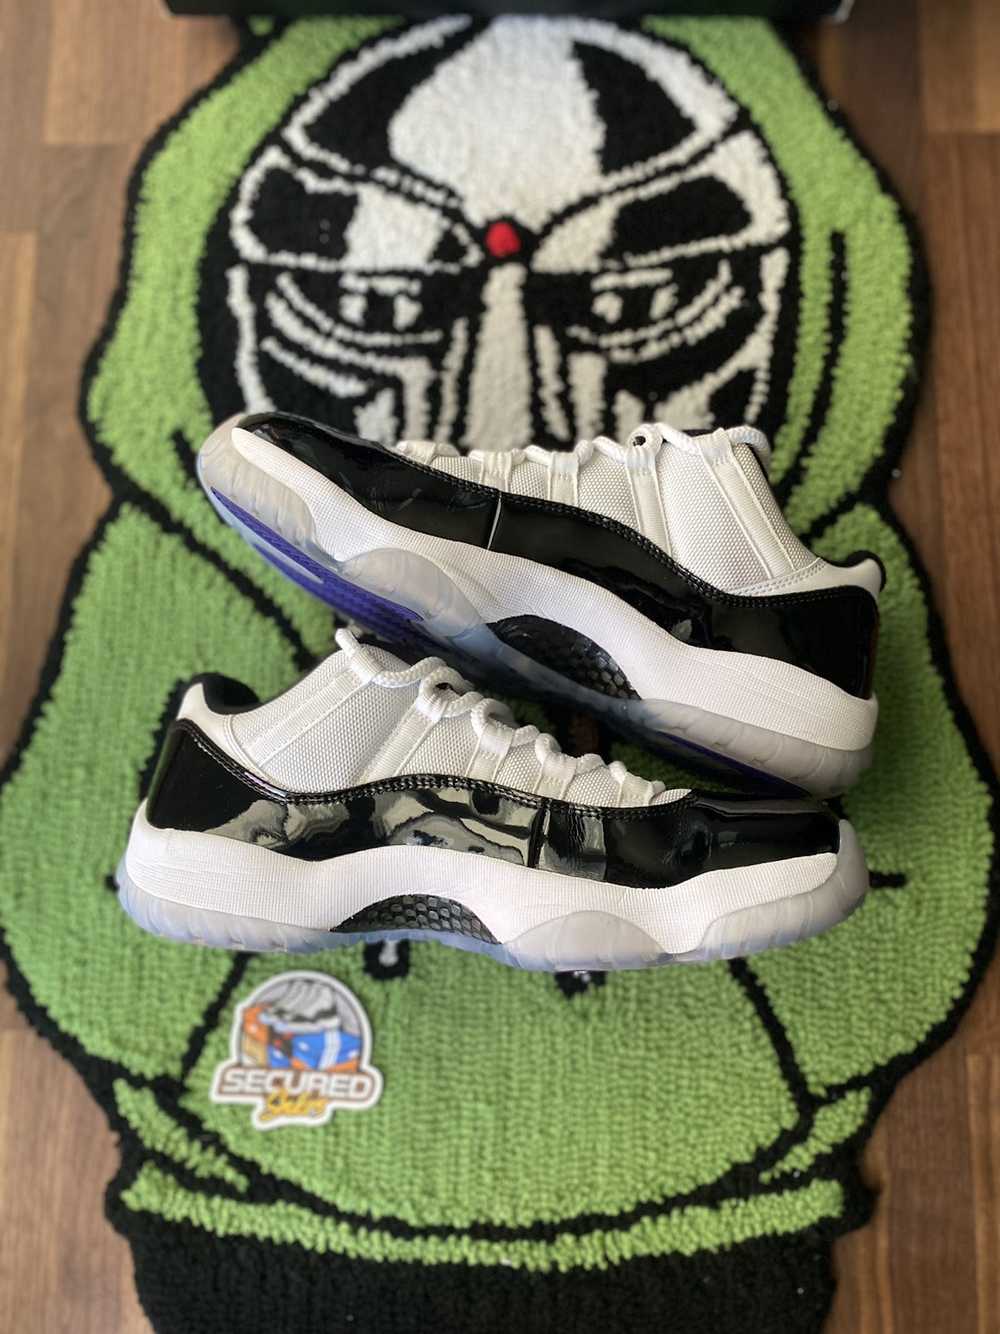 Jordan Brand × Nike Jordan 11 Concord low (2014) - image 2